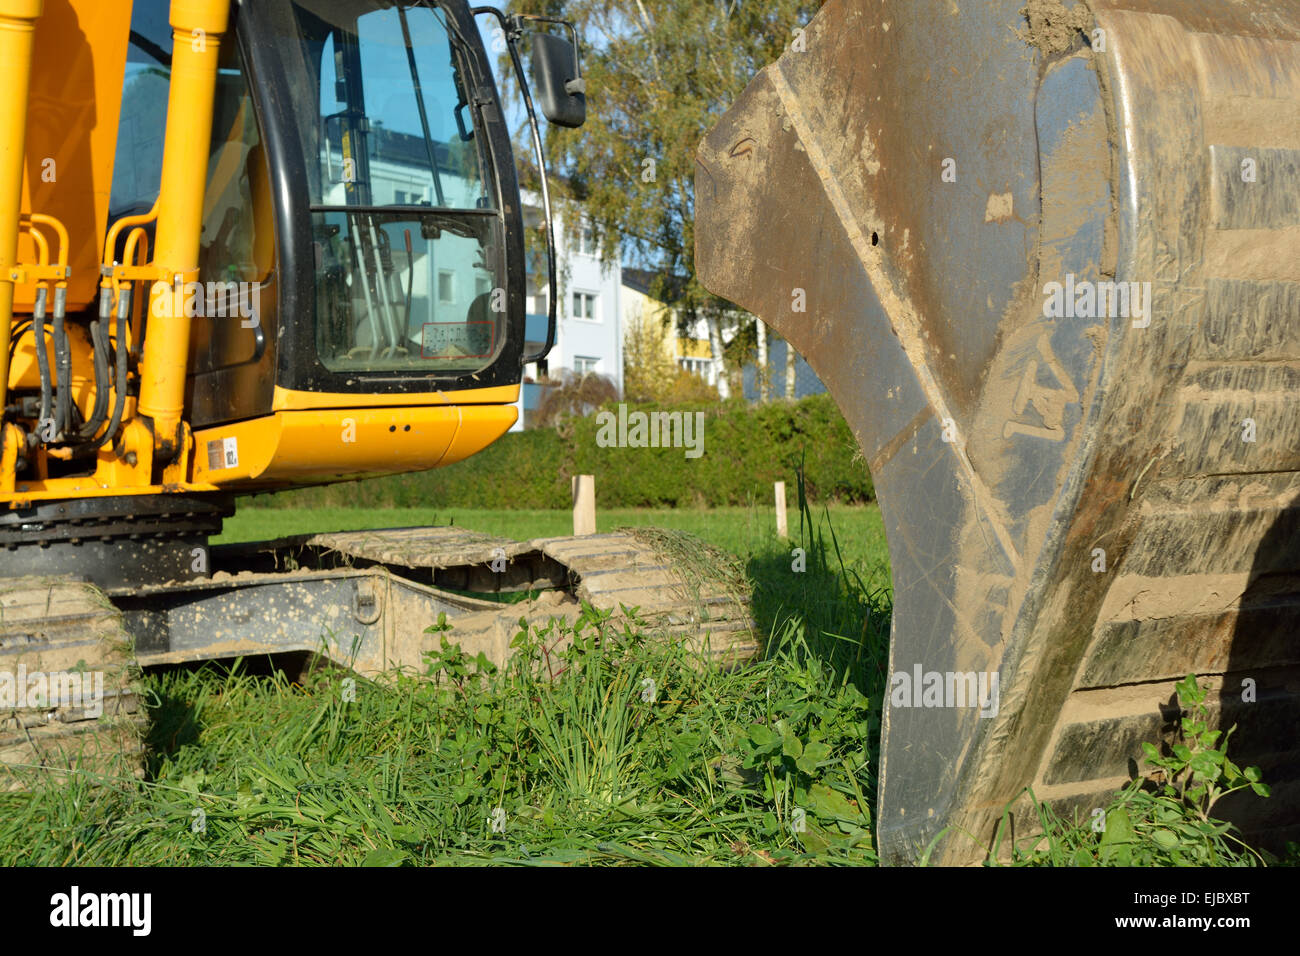 Track excavator - excavator bucket Stock Photo